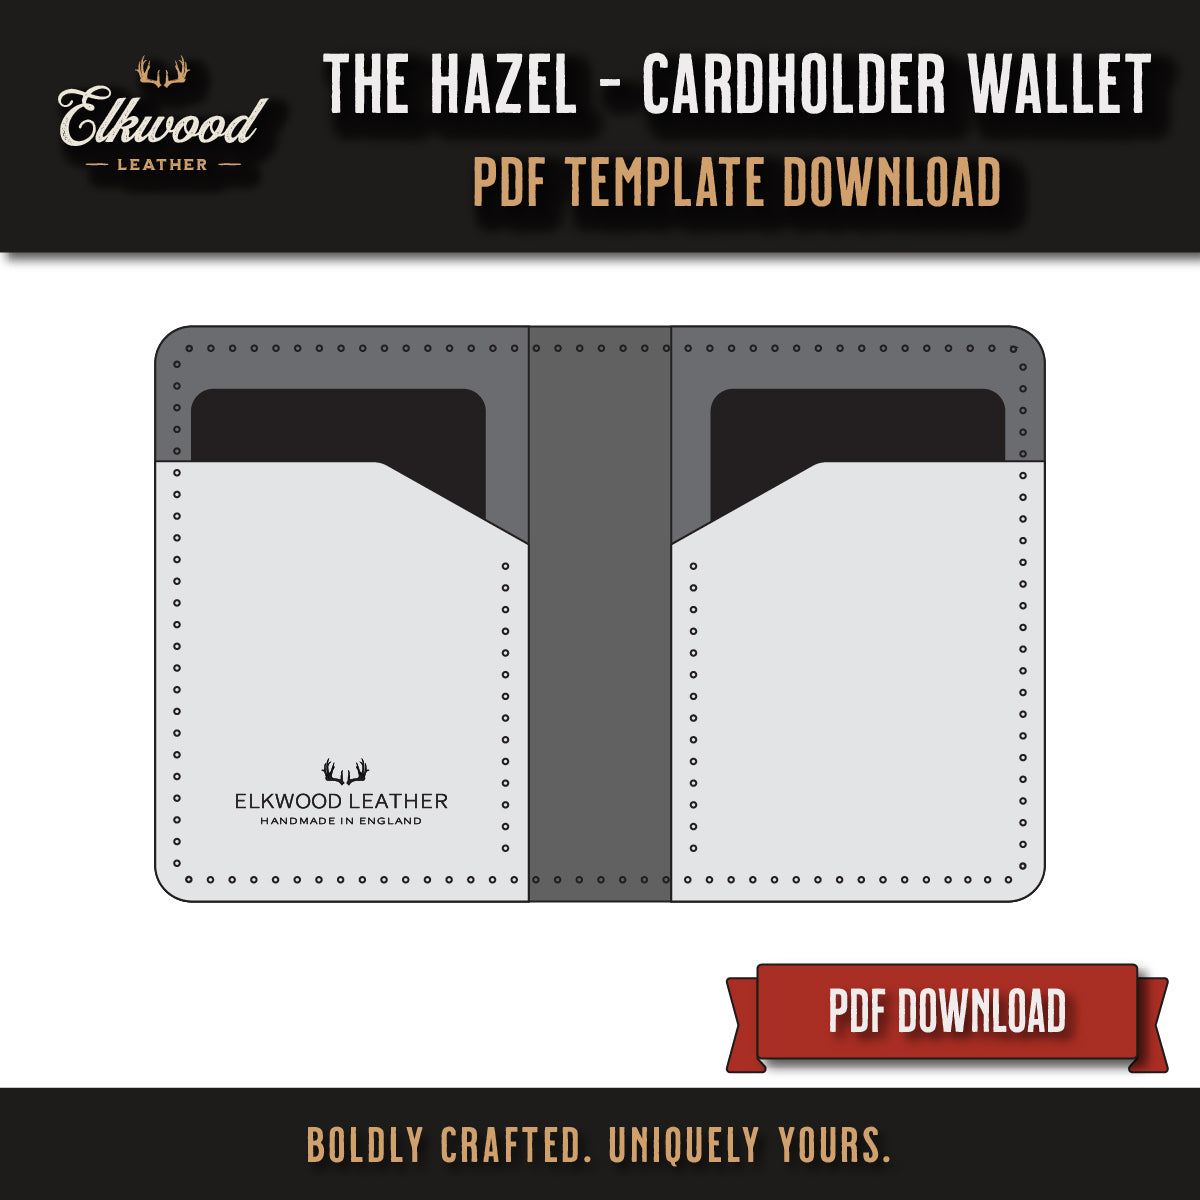 Elkwood Leather - The Hazel Cardholder wallet digital download pdf template